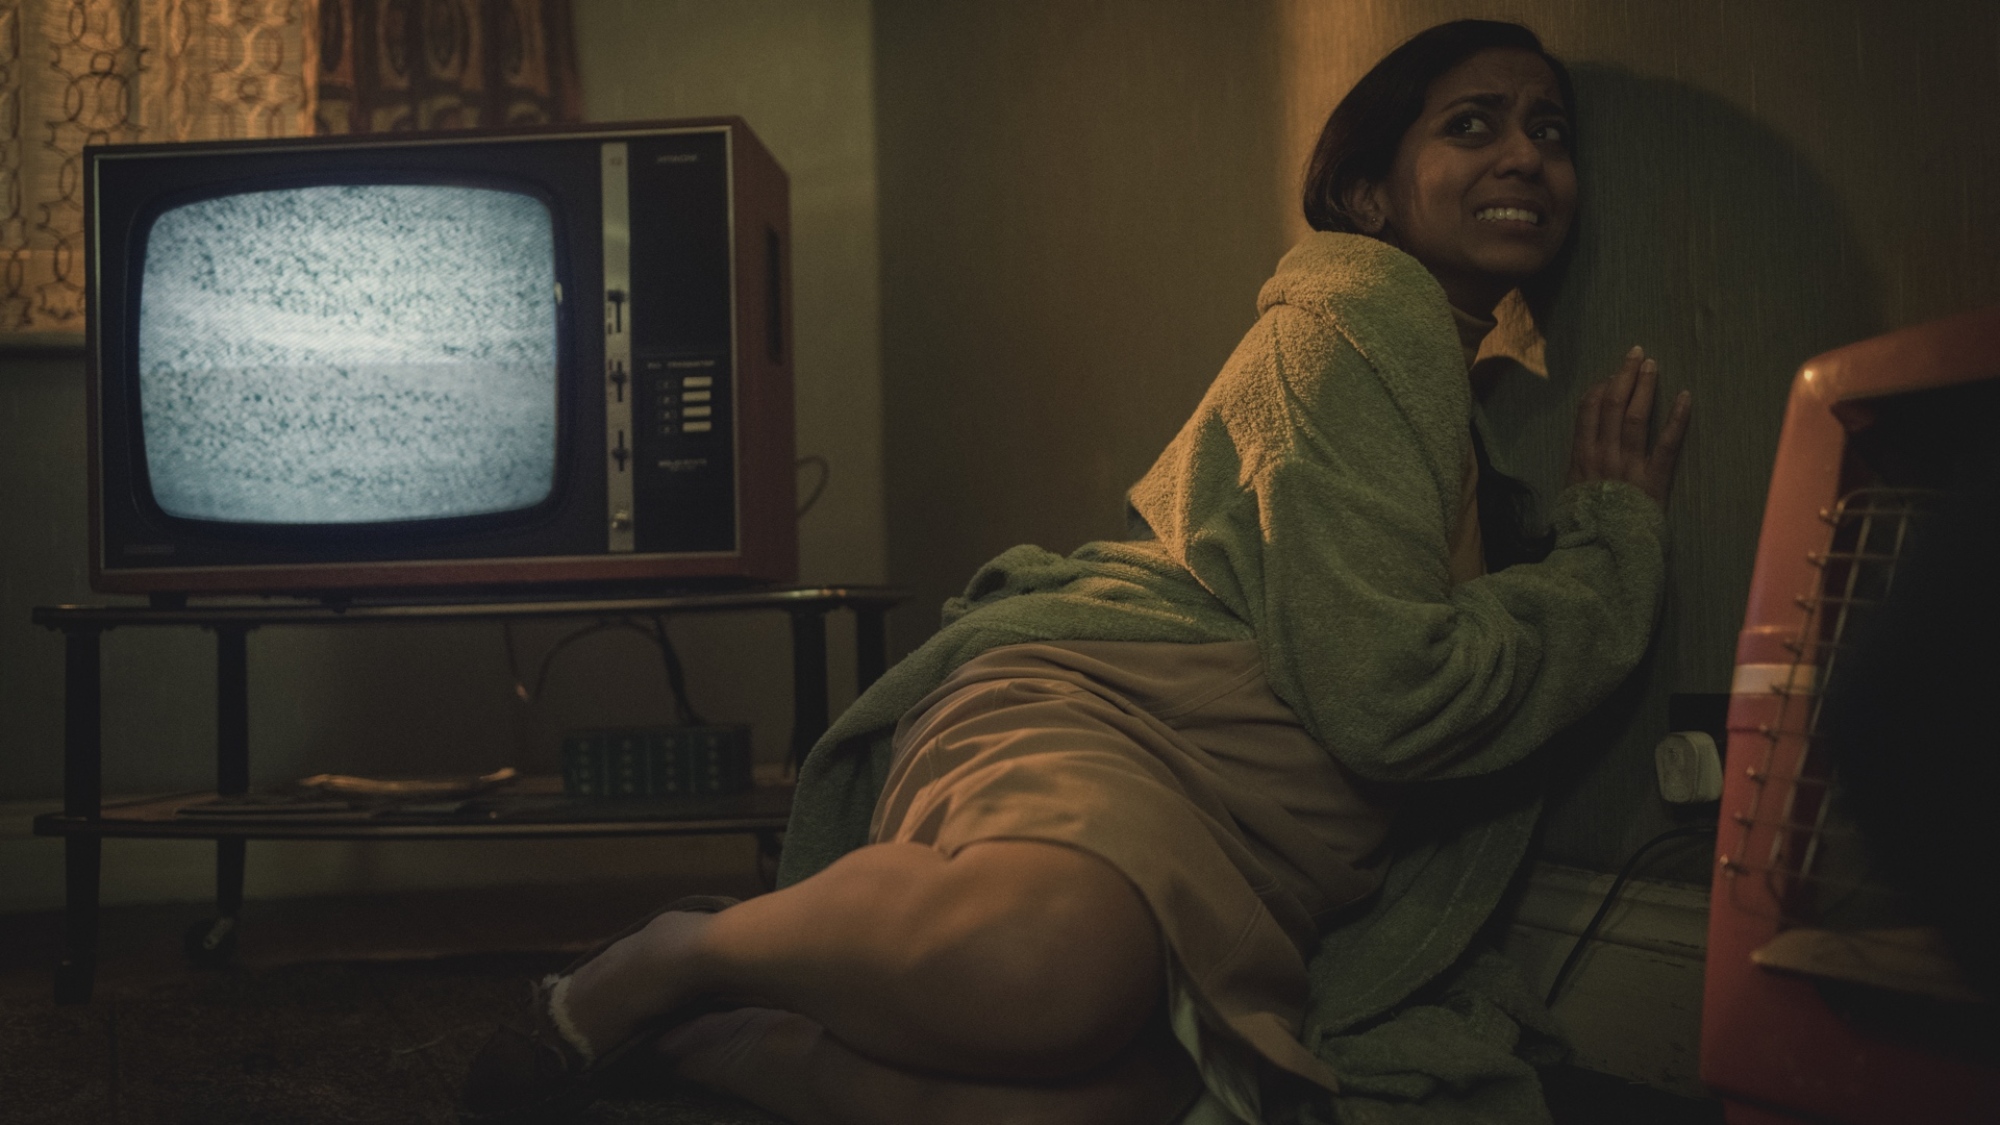 Une femme en tenue des années 70 se recroqueville contre le mur tandis qu'un écran de télévision à côté d'elle affiche des parasites.